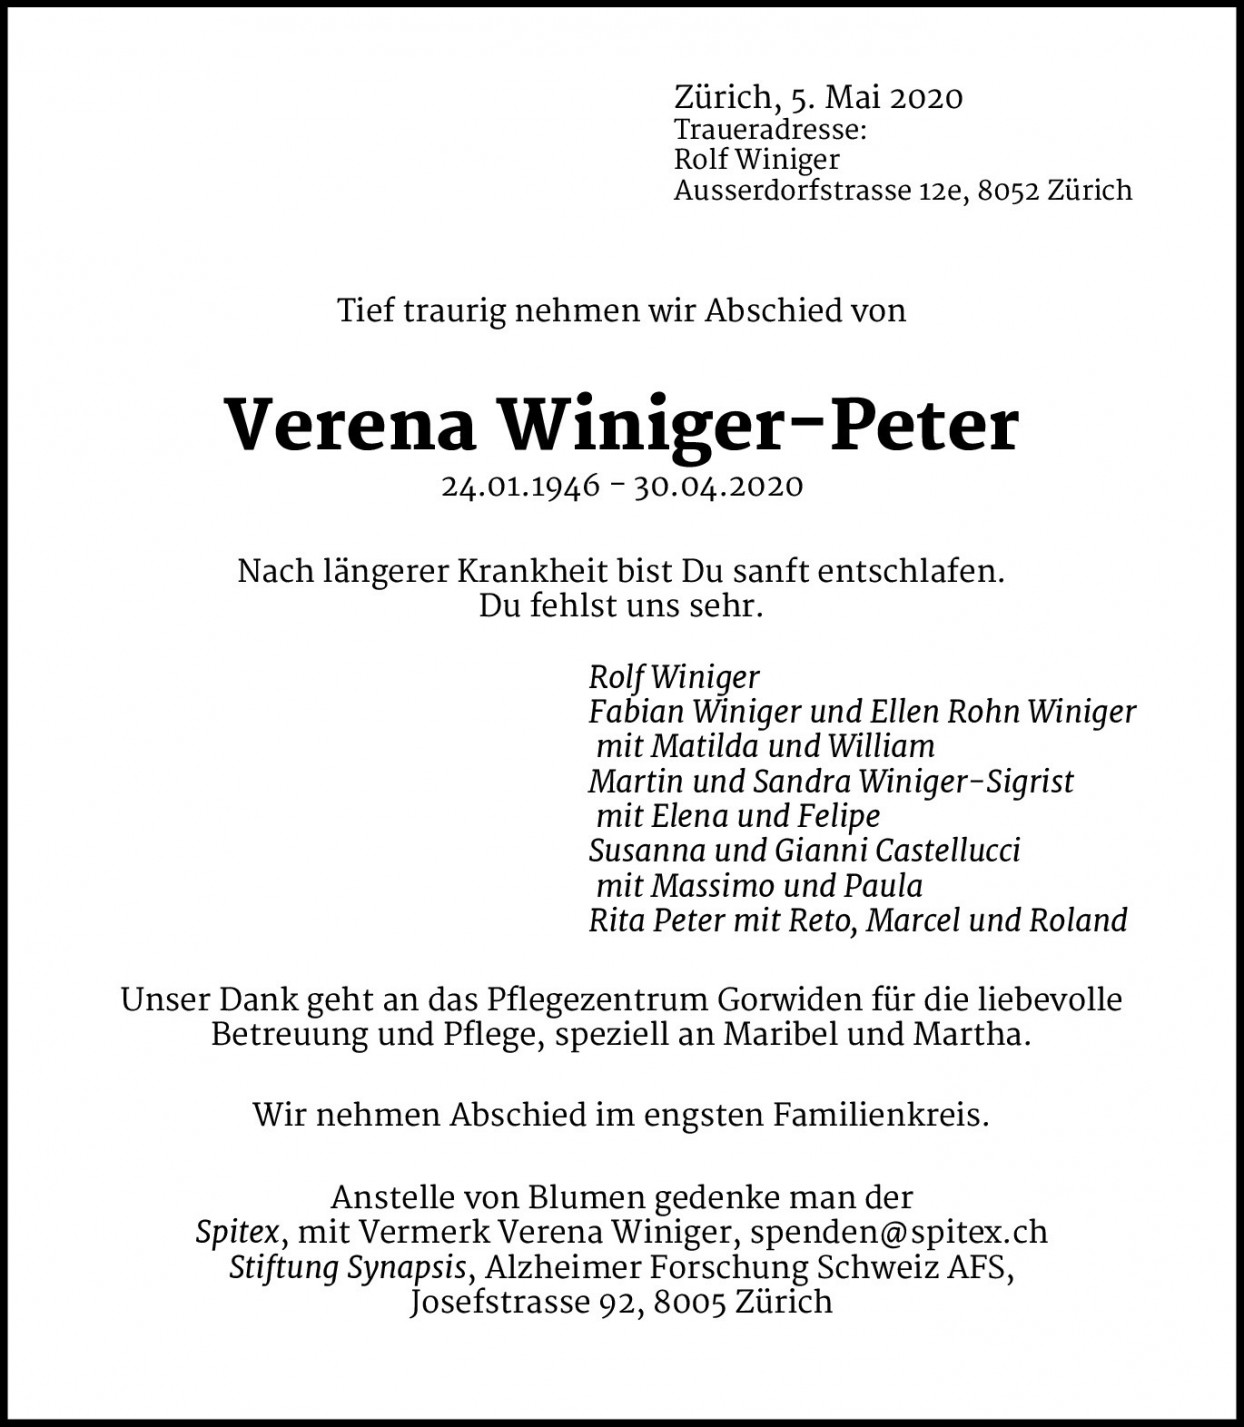 Verena Winiger-Peter